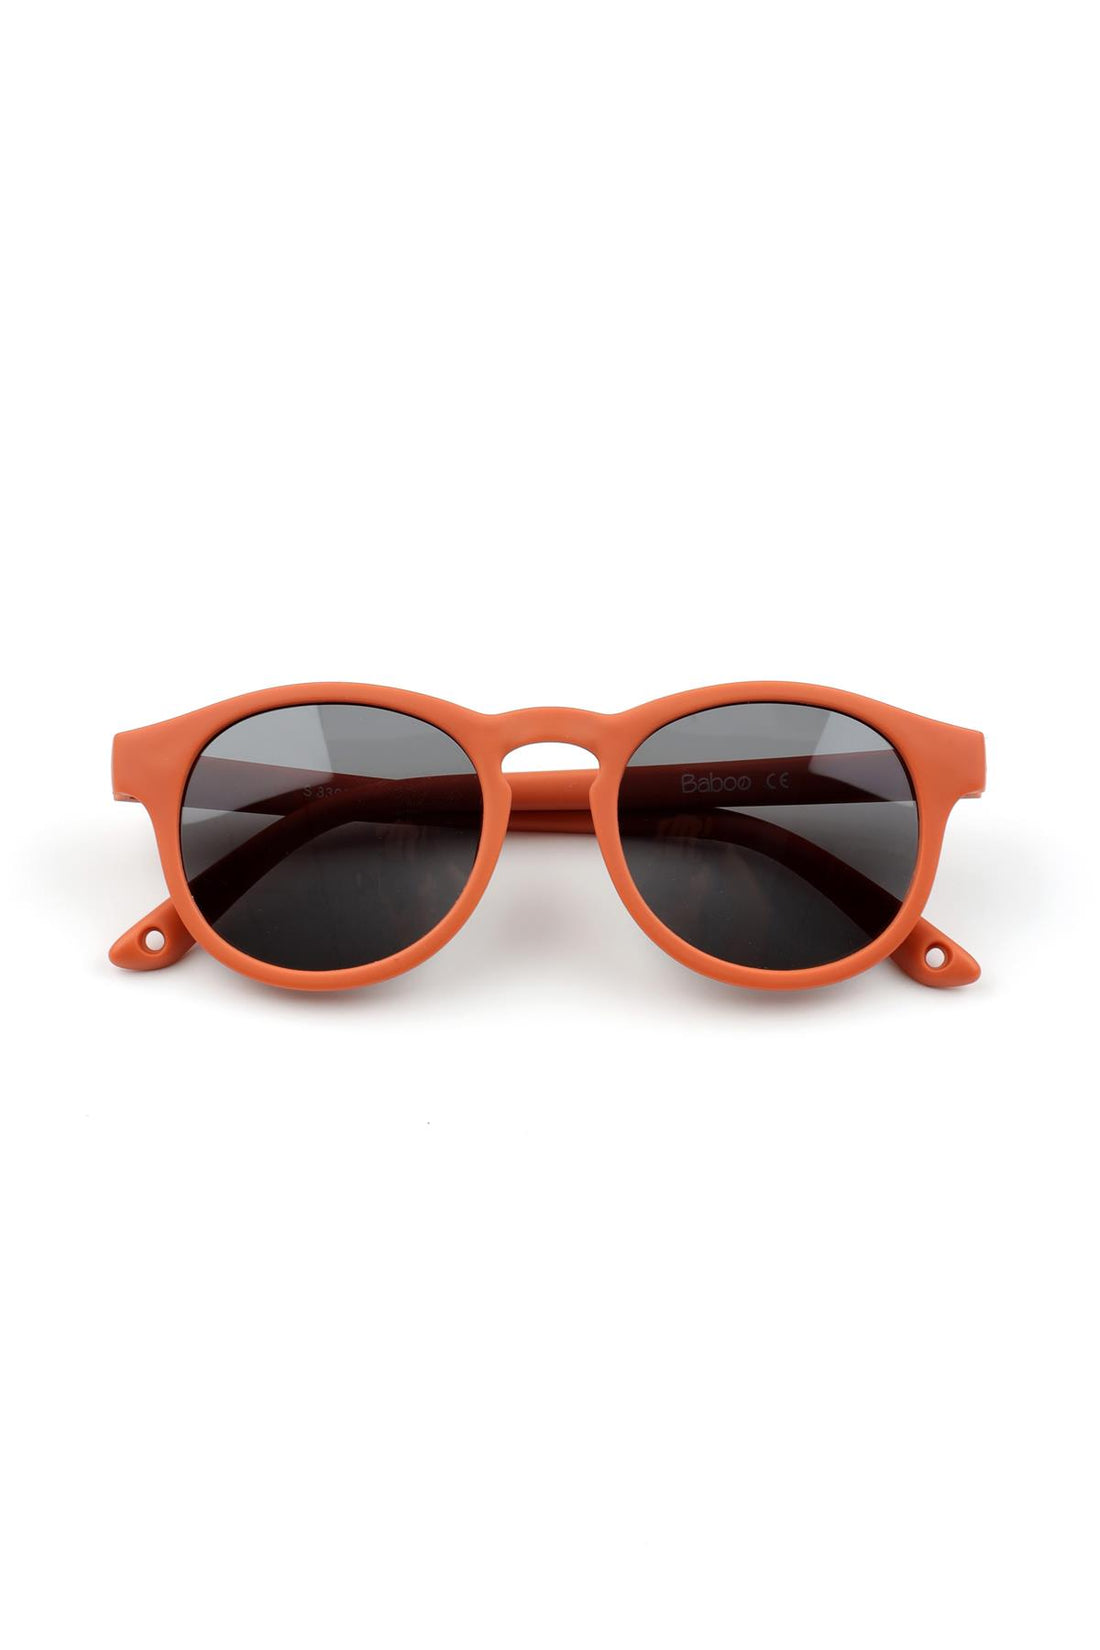 Ultra Light Midi Size Children's Sunglasses Orange